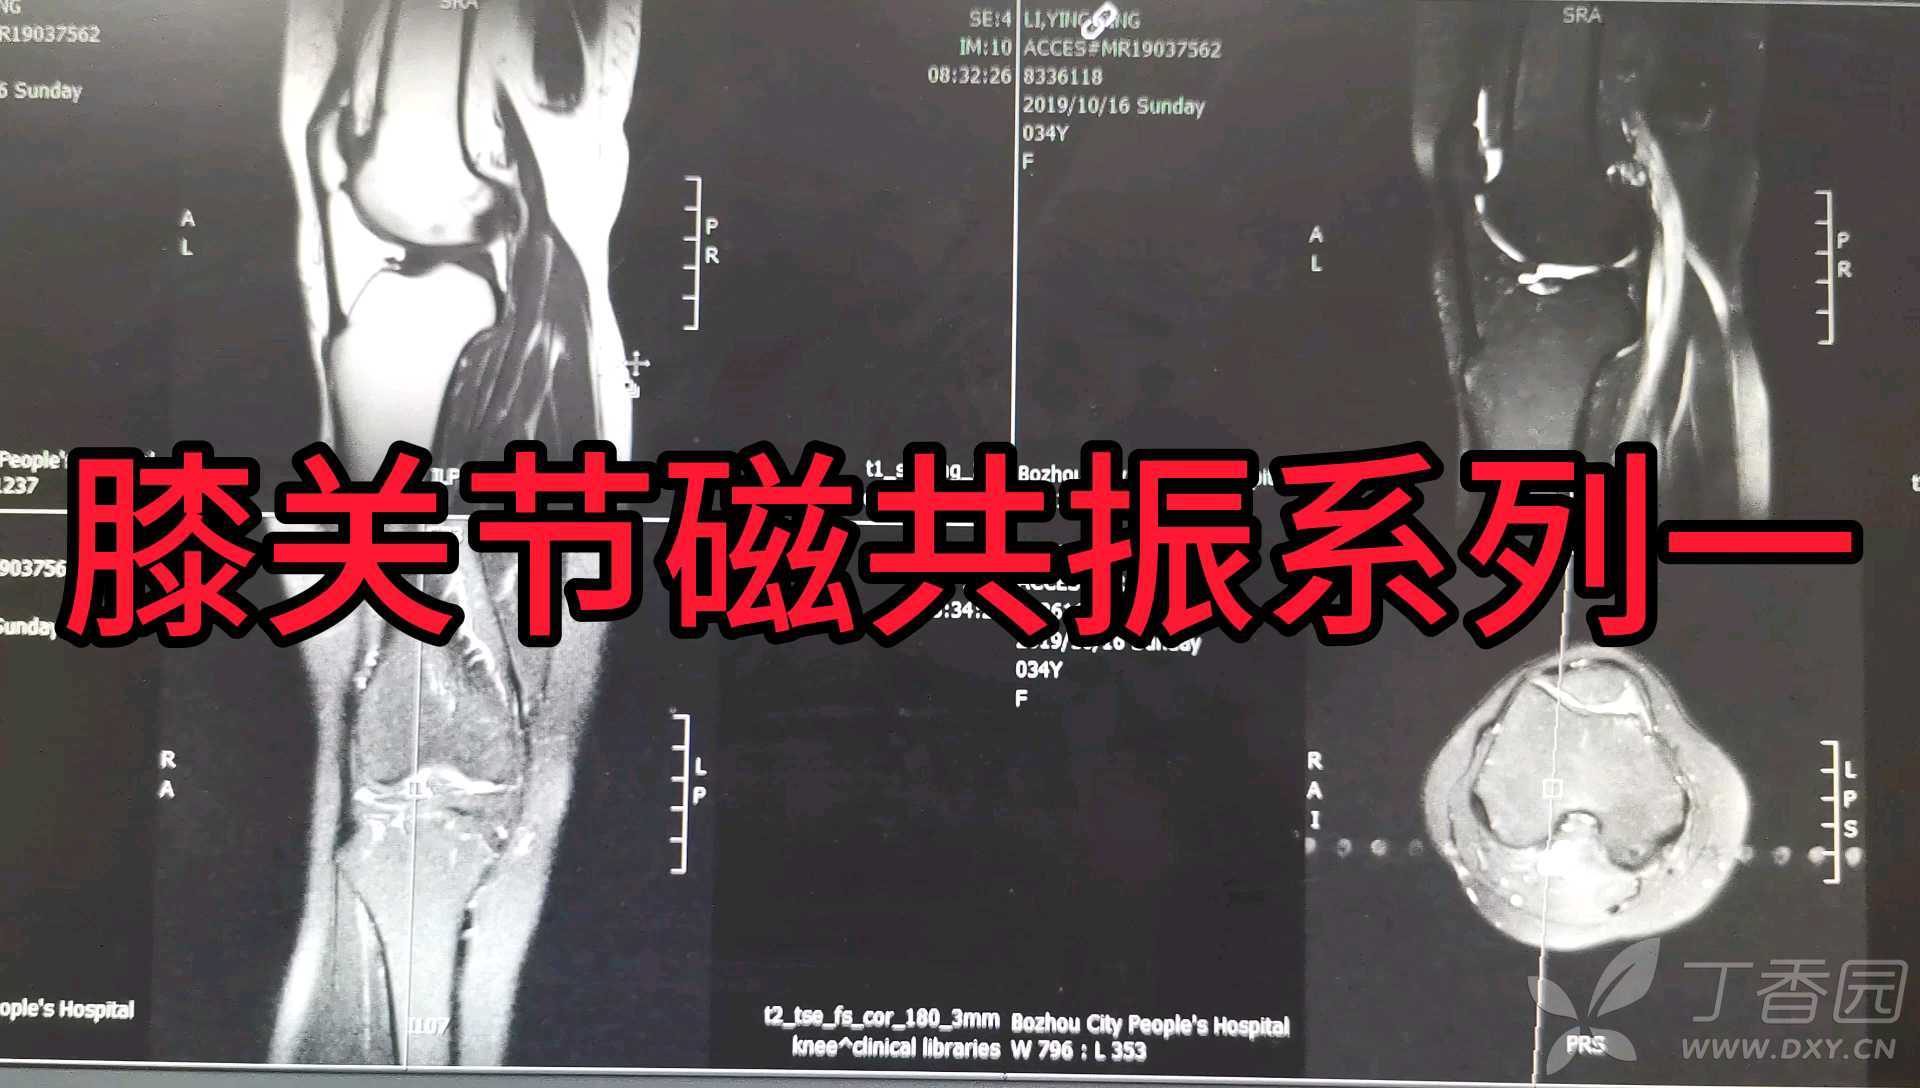 简介膝关节软组织运动损伤类型和案例分析 - 知乎